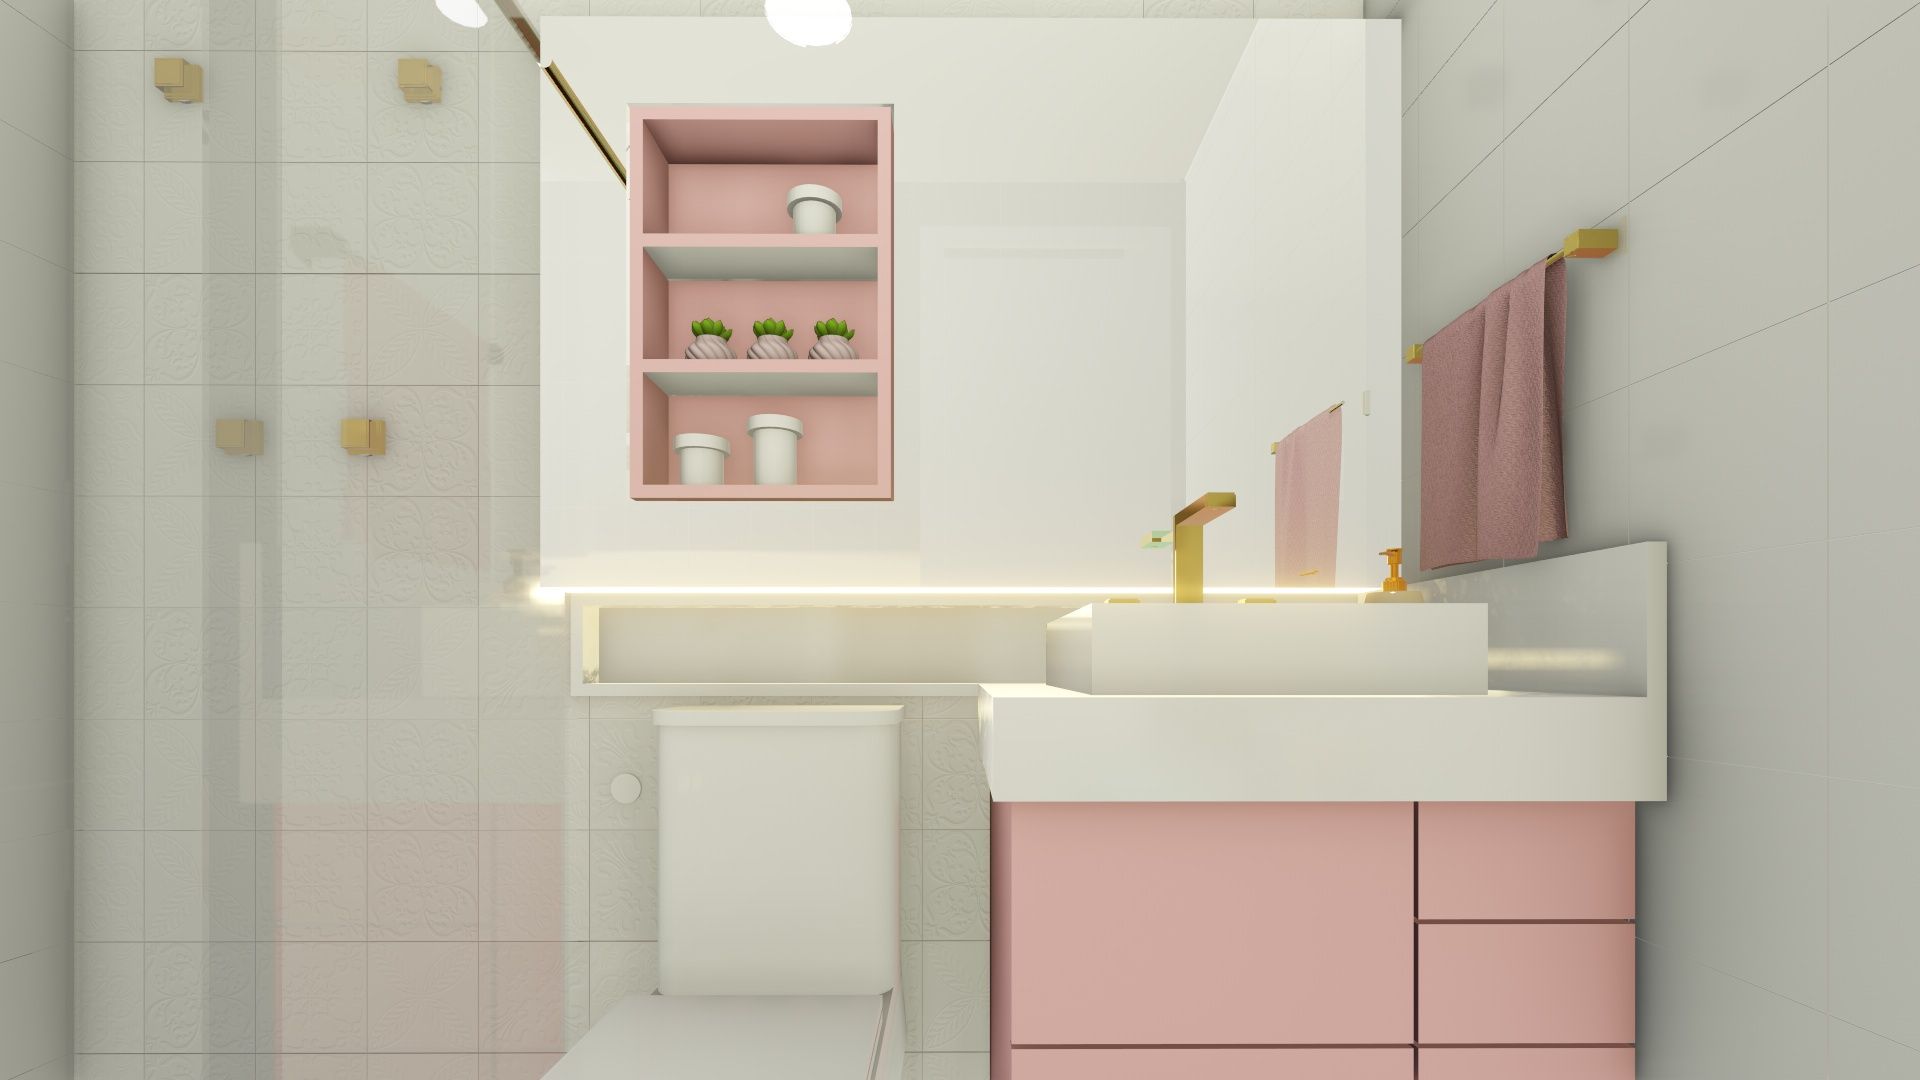 Apartamento de Cobertura com Terraço, Joana Rezende Arquitetura e Arte Joana Rezende Arquitetura e Arte Banheiros modernos rosa e branco,banheiro pequeno,banheiro branco